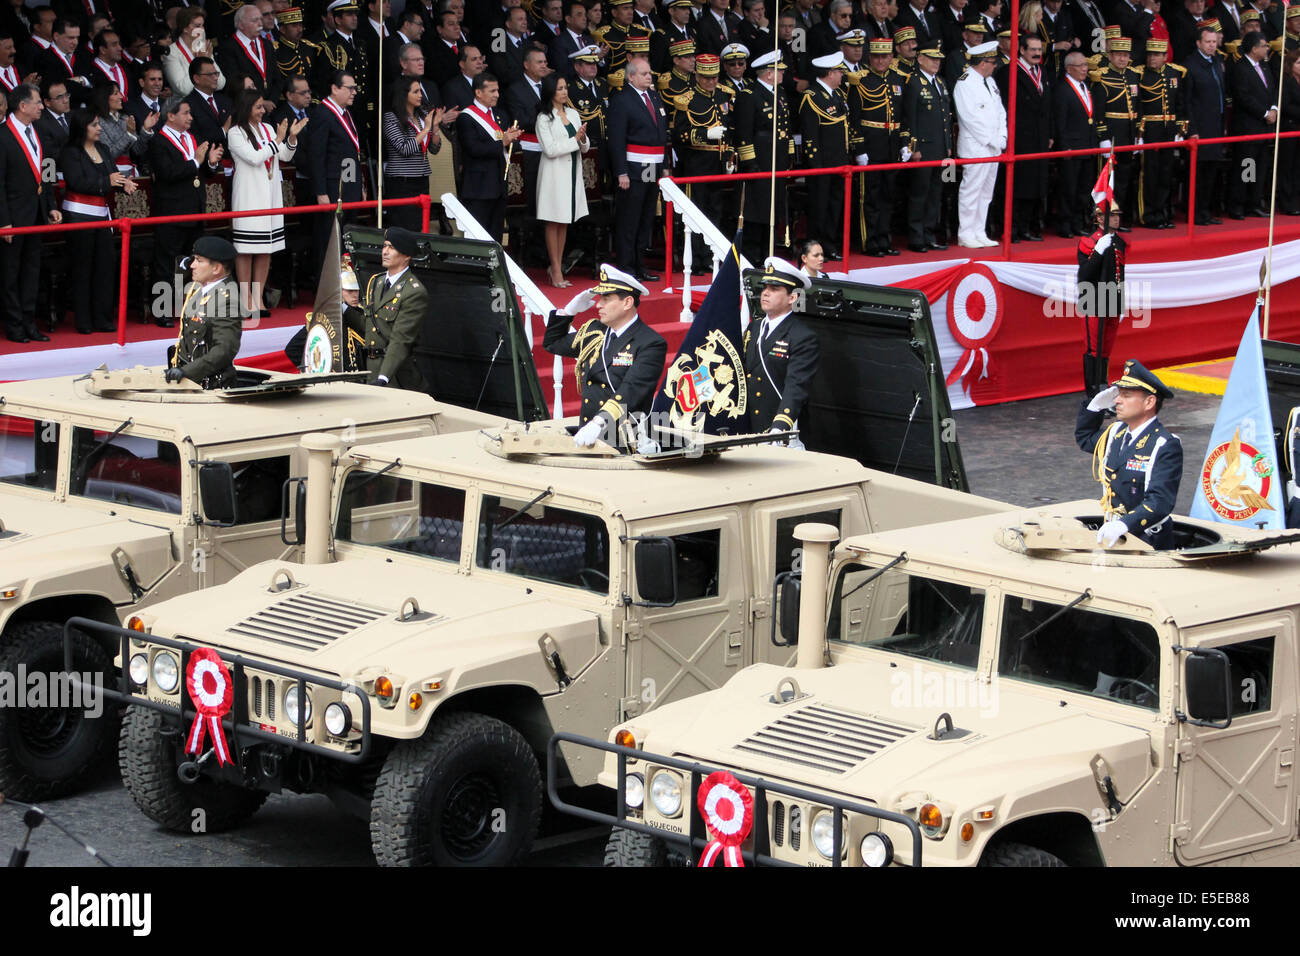 Lima. El 29 de julio, 2014. La imagen tomada el 29 de julio de 2014 muestra las fuerzas del Ejército Peruano en el desfile militar en Lima, Perú. El desfile militar que se llevó a cabo como parte de las actividades de celebración del Día de la Independencia del Perú. Crédito: Luis Camacho/Xinhua/Alamy Live News Foto de stock